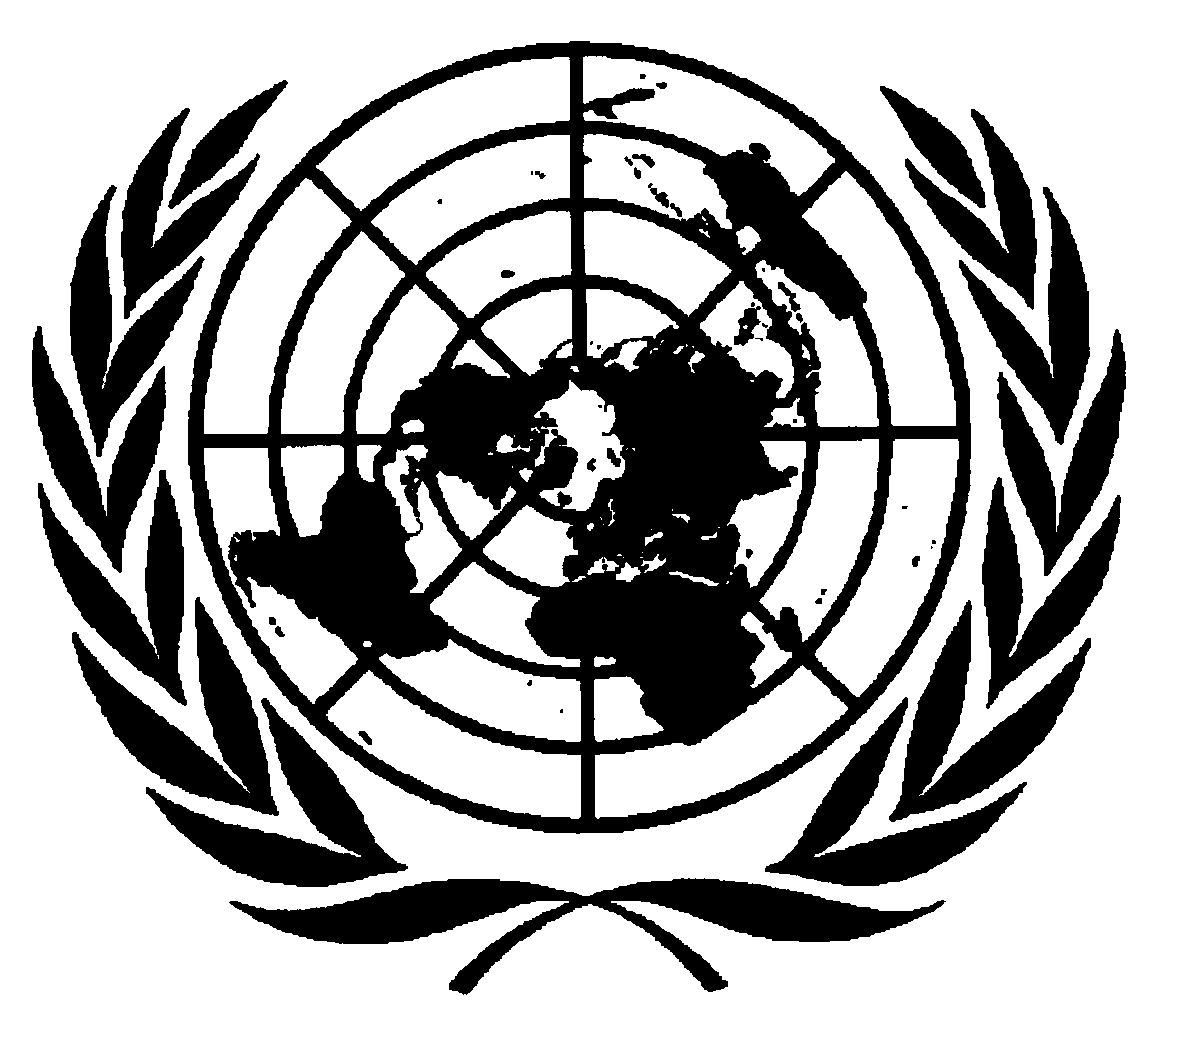 CONFÉRENCE DES NATIONS UNIES SUR LE COMMERCE ET LE